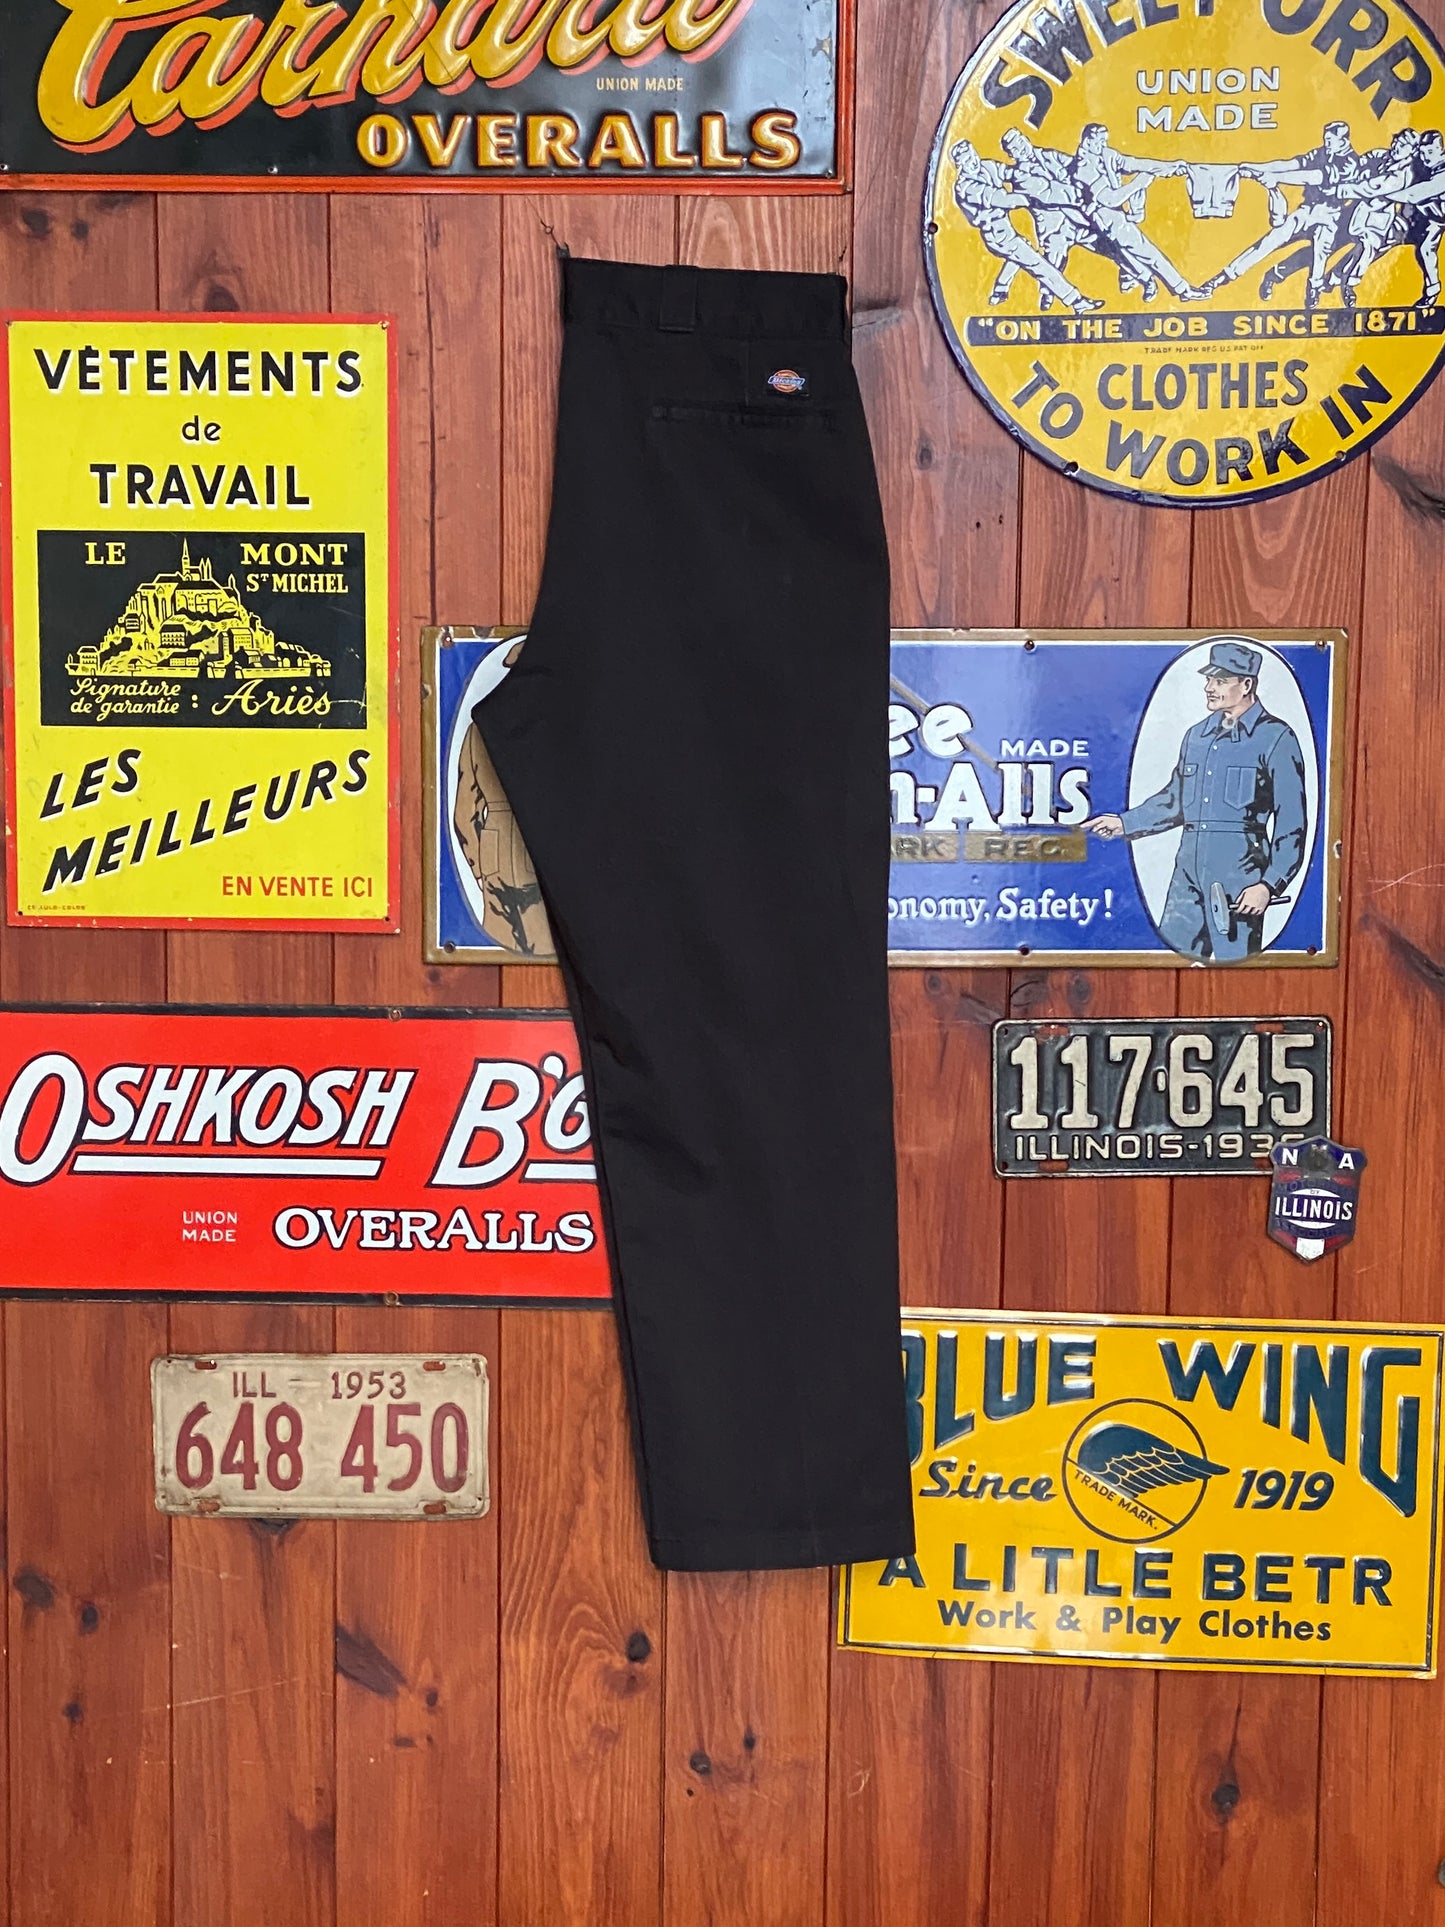 Black Vintage Dickies pants model 874 size 38X29